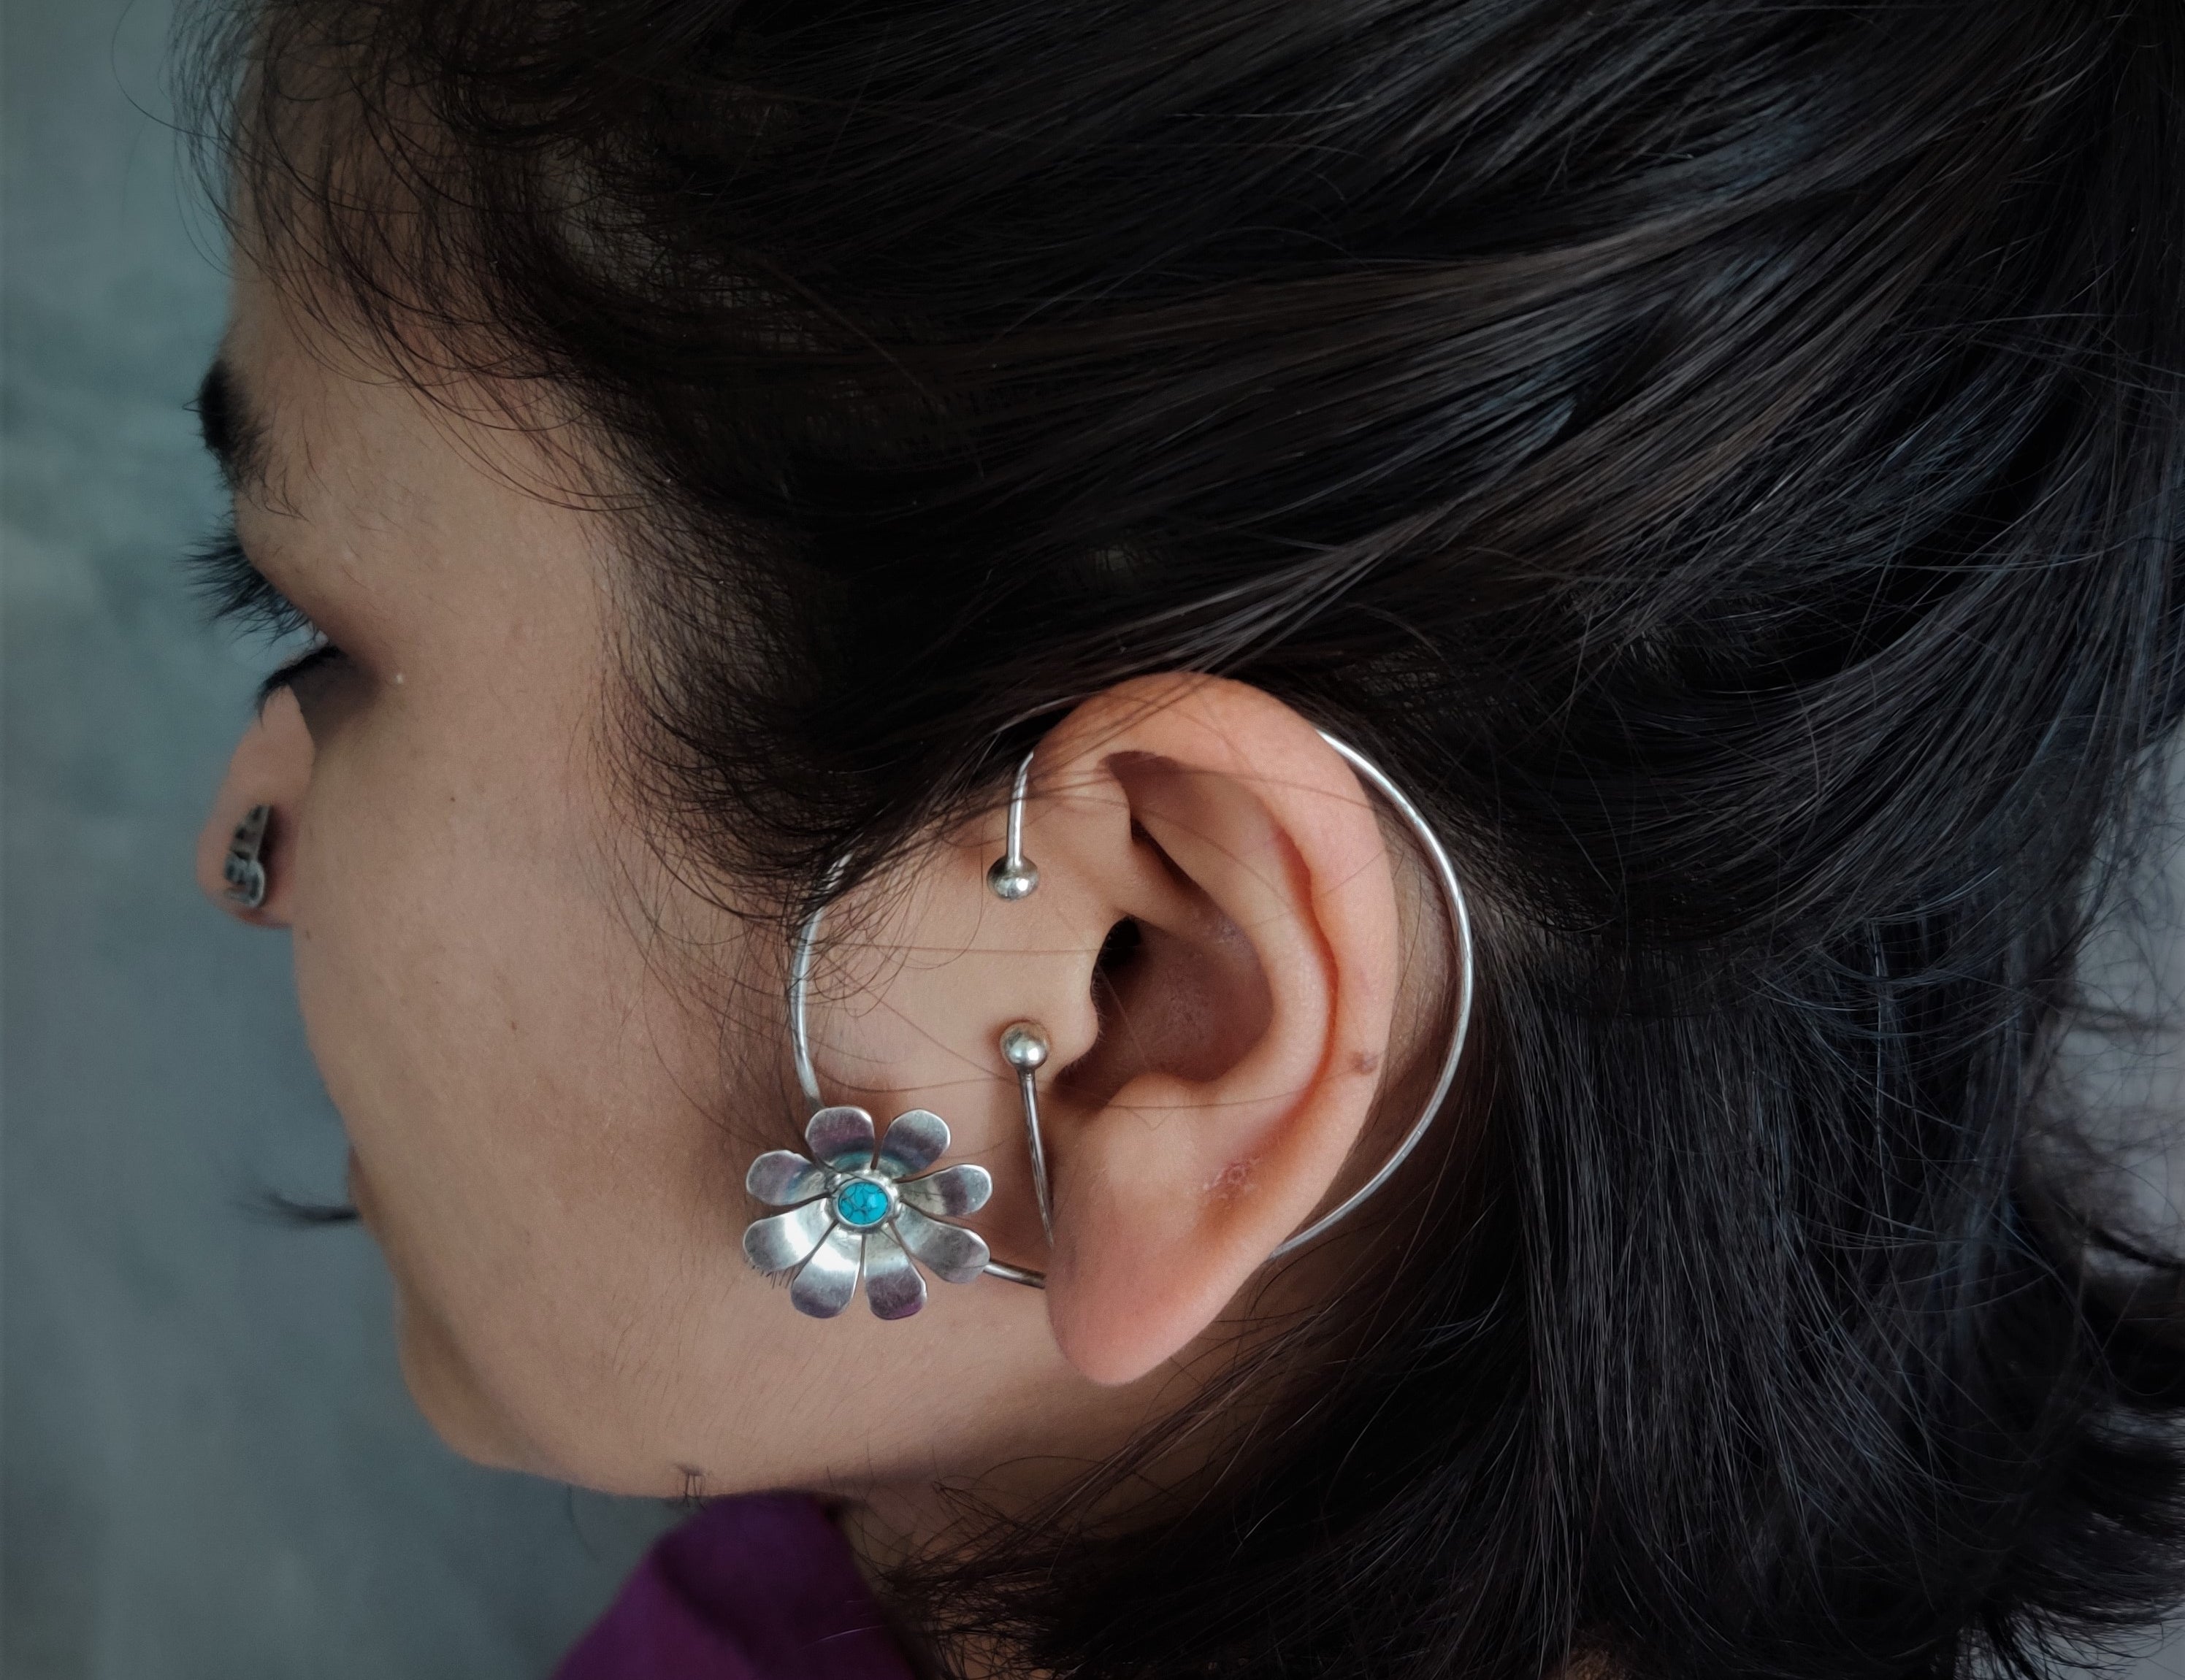 Buy Stylish Silver Ear Cuffs Online - Daisy Hoola Hoop by Quirksmith